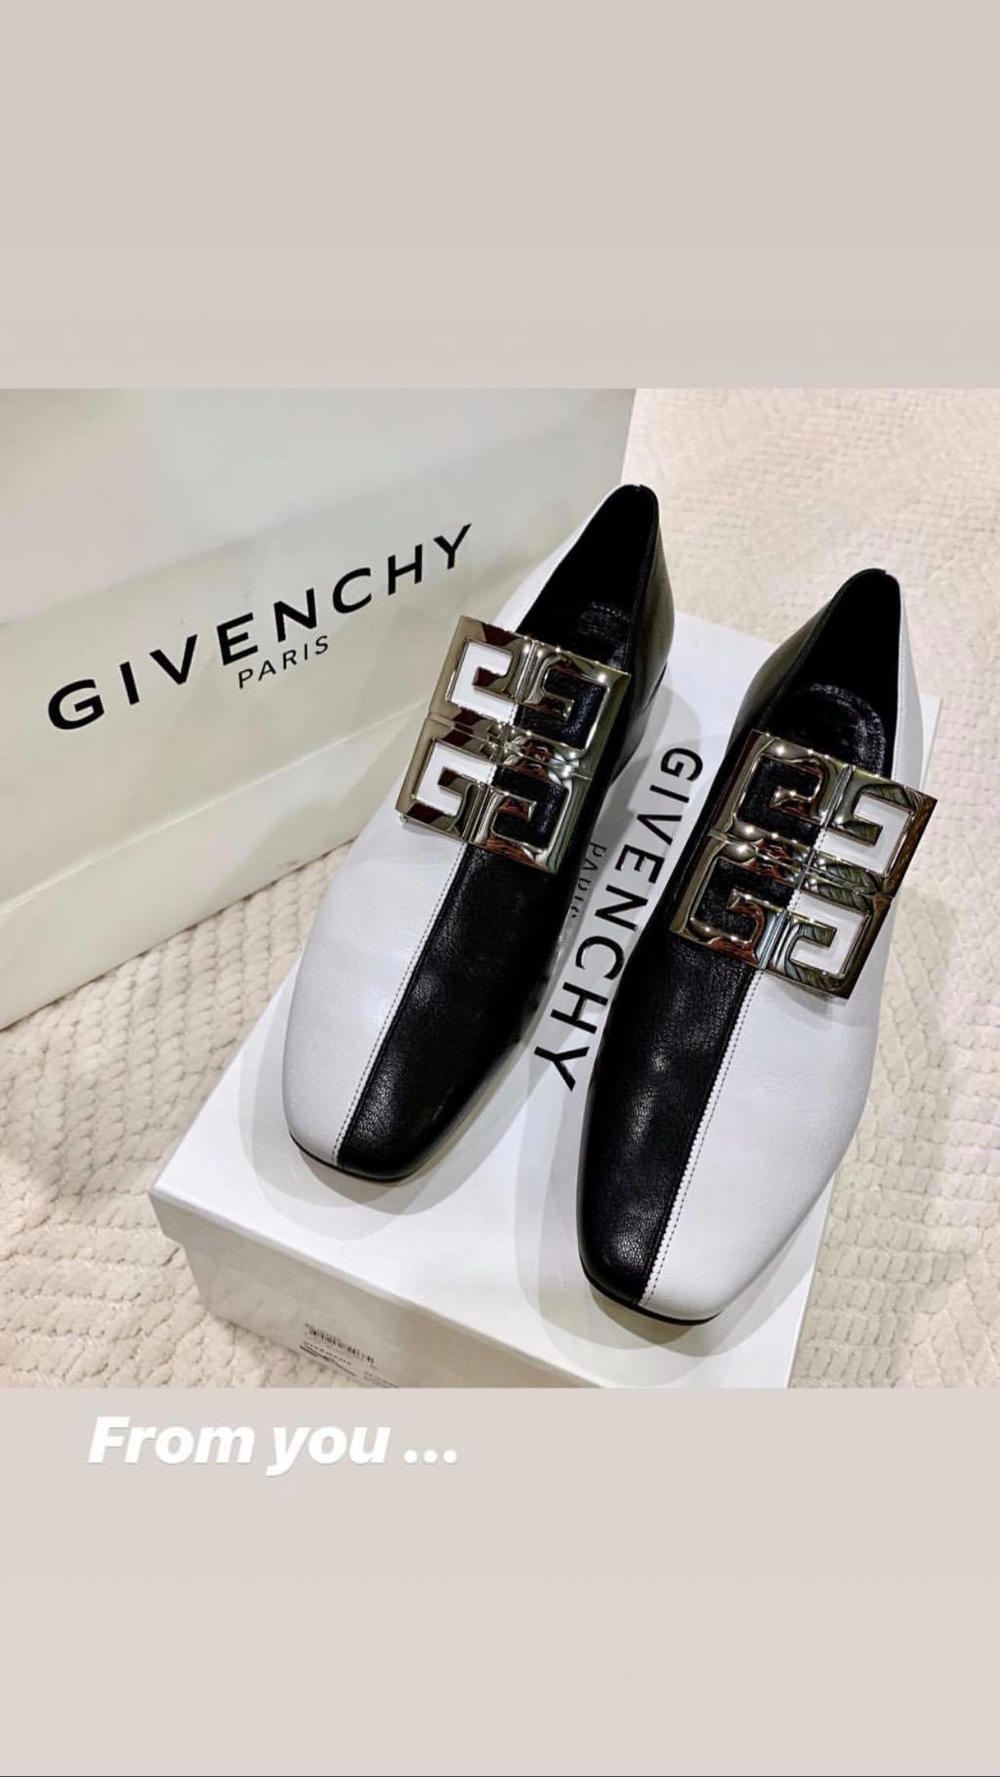  
Giày Givenchy gần 21 triệu đồng.